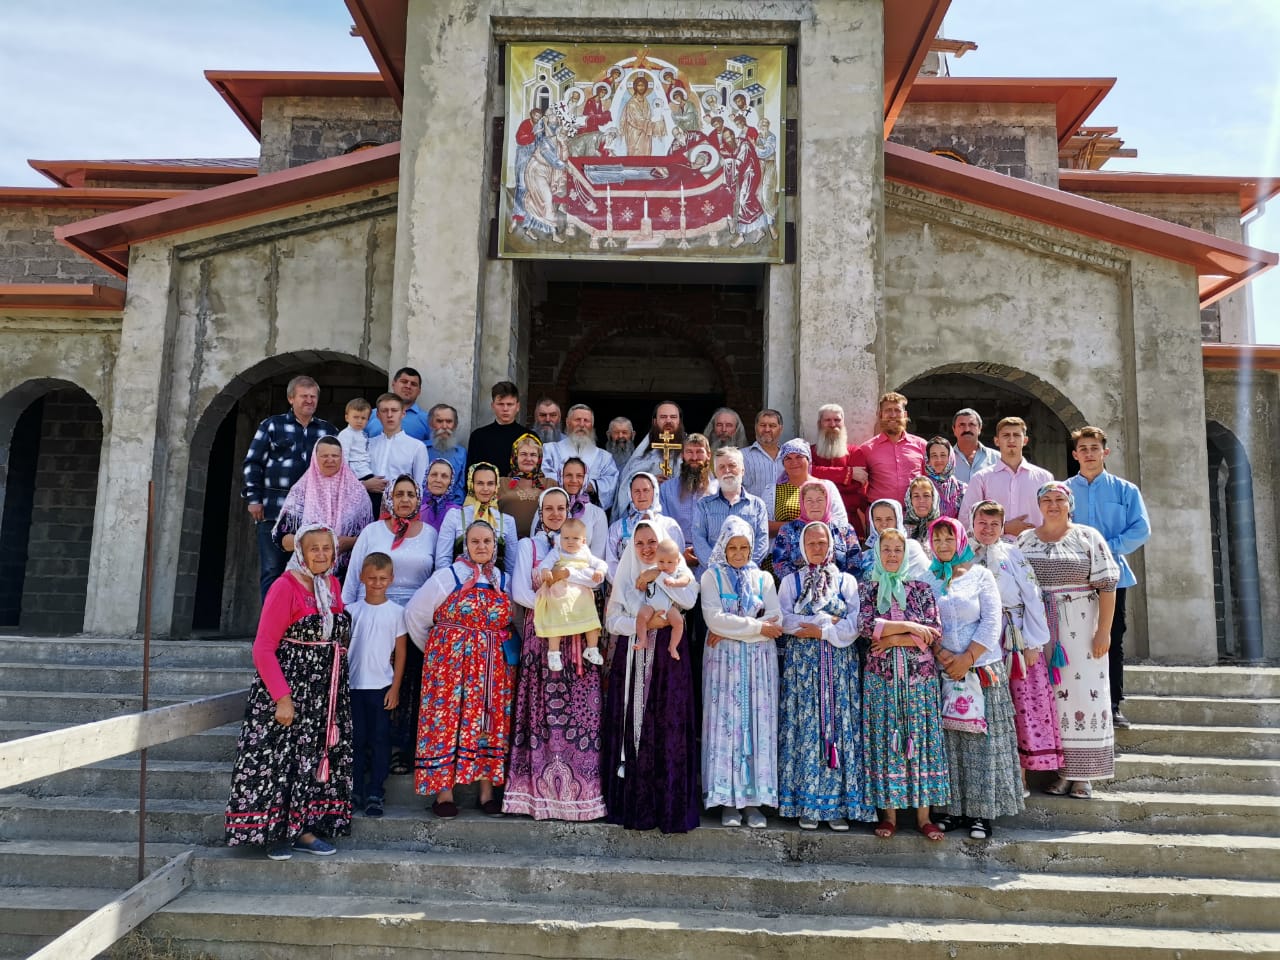 10 Община города Сочи храма Успения Пресвятой Богородицы